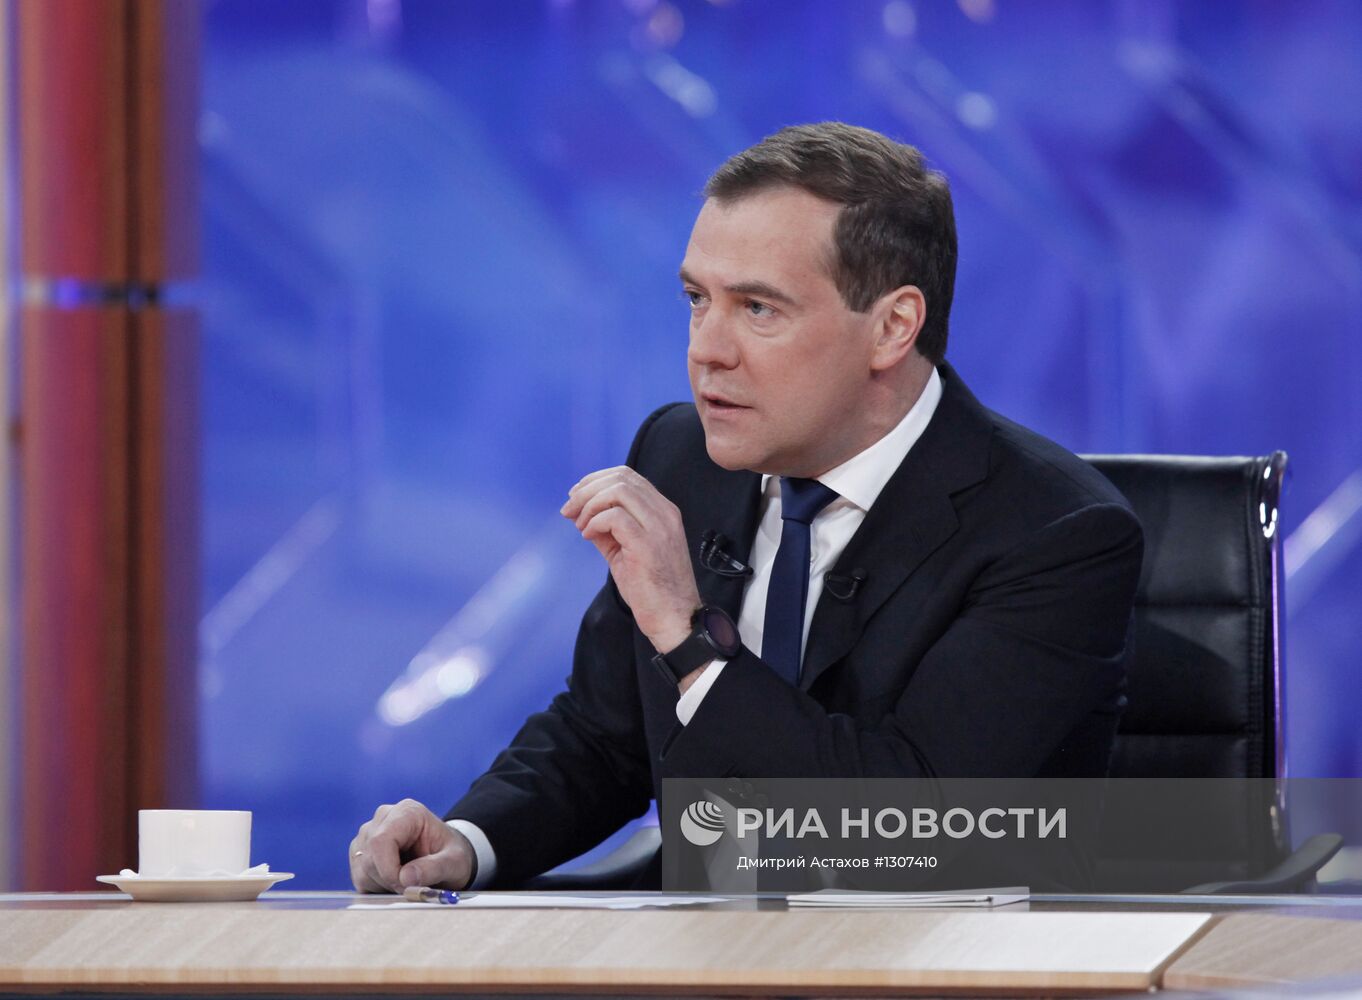 Д.Медведев на встрече с журналистами федеральных телеканалов